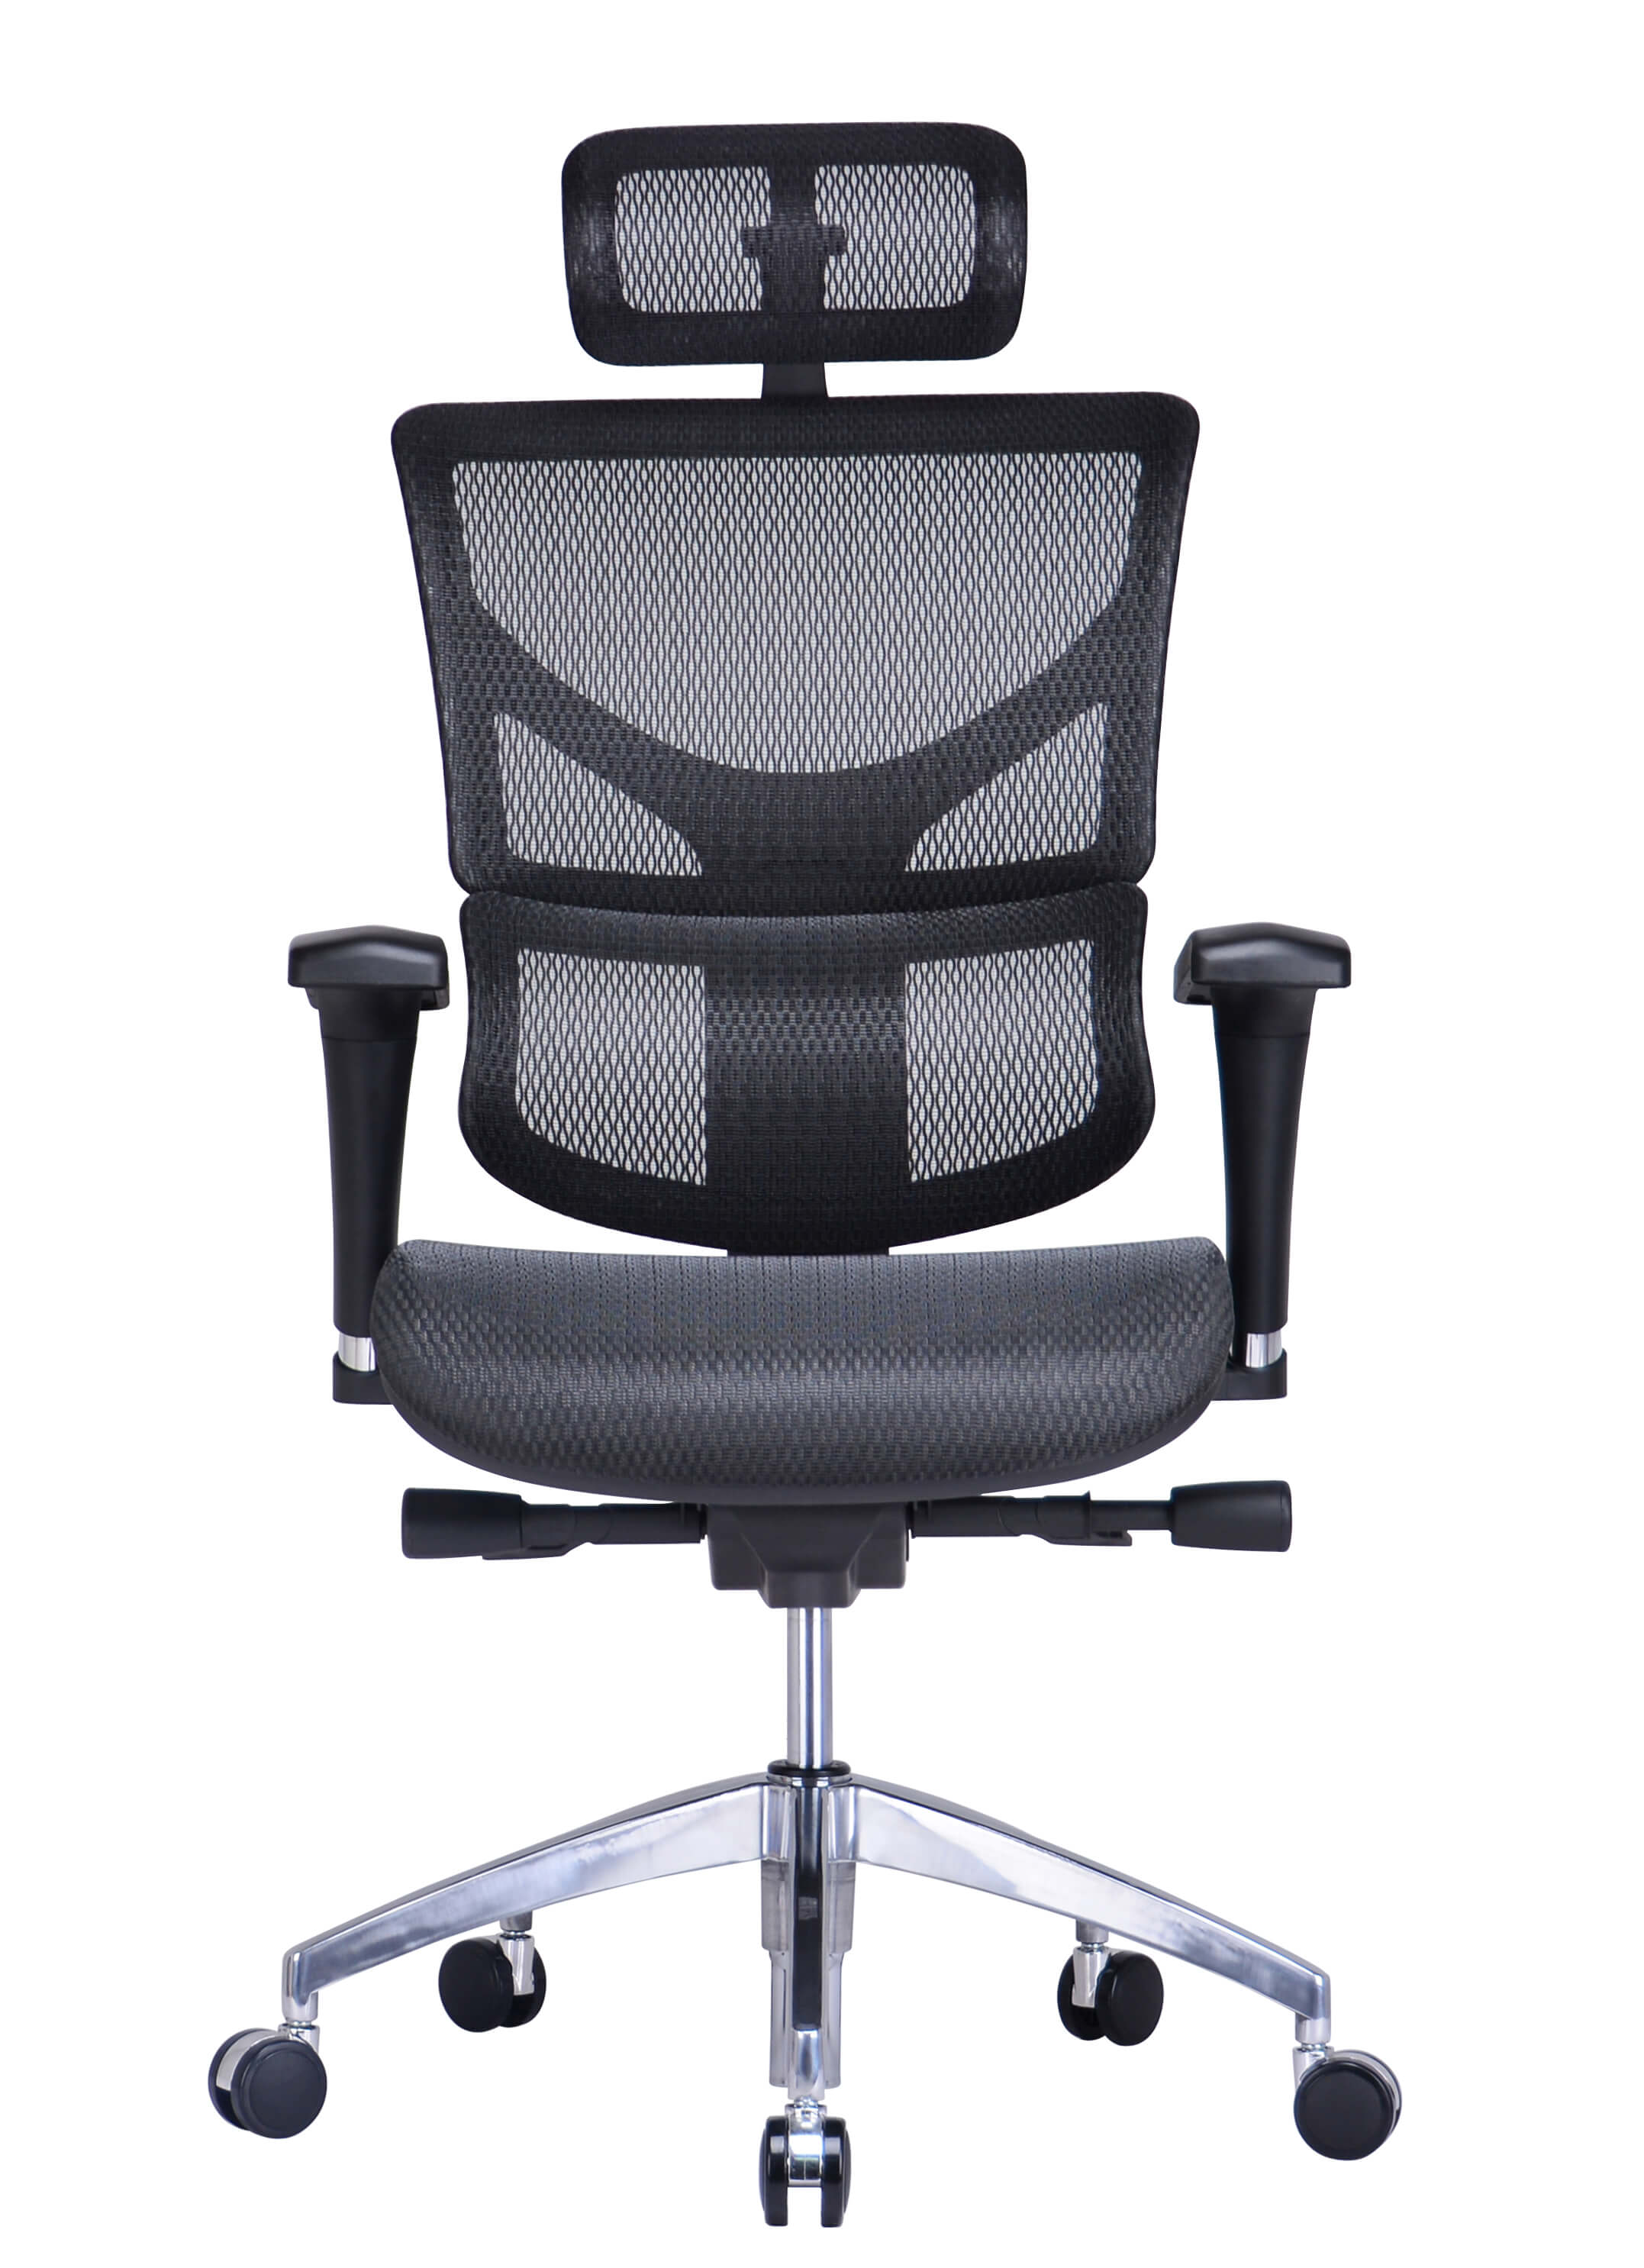 Эргономичное кресло Expert Sail ART SAS-M01 (черный)